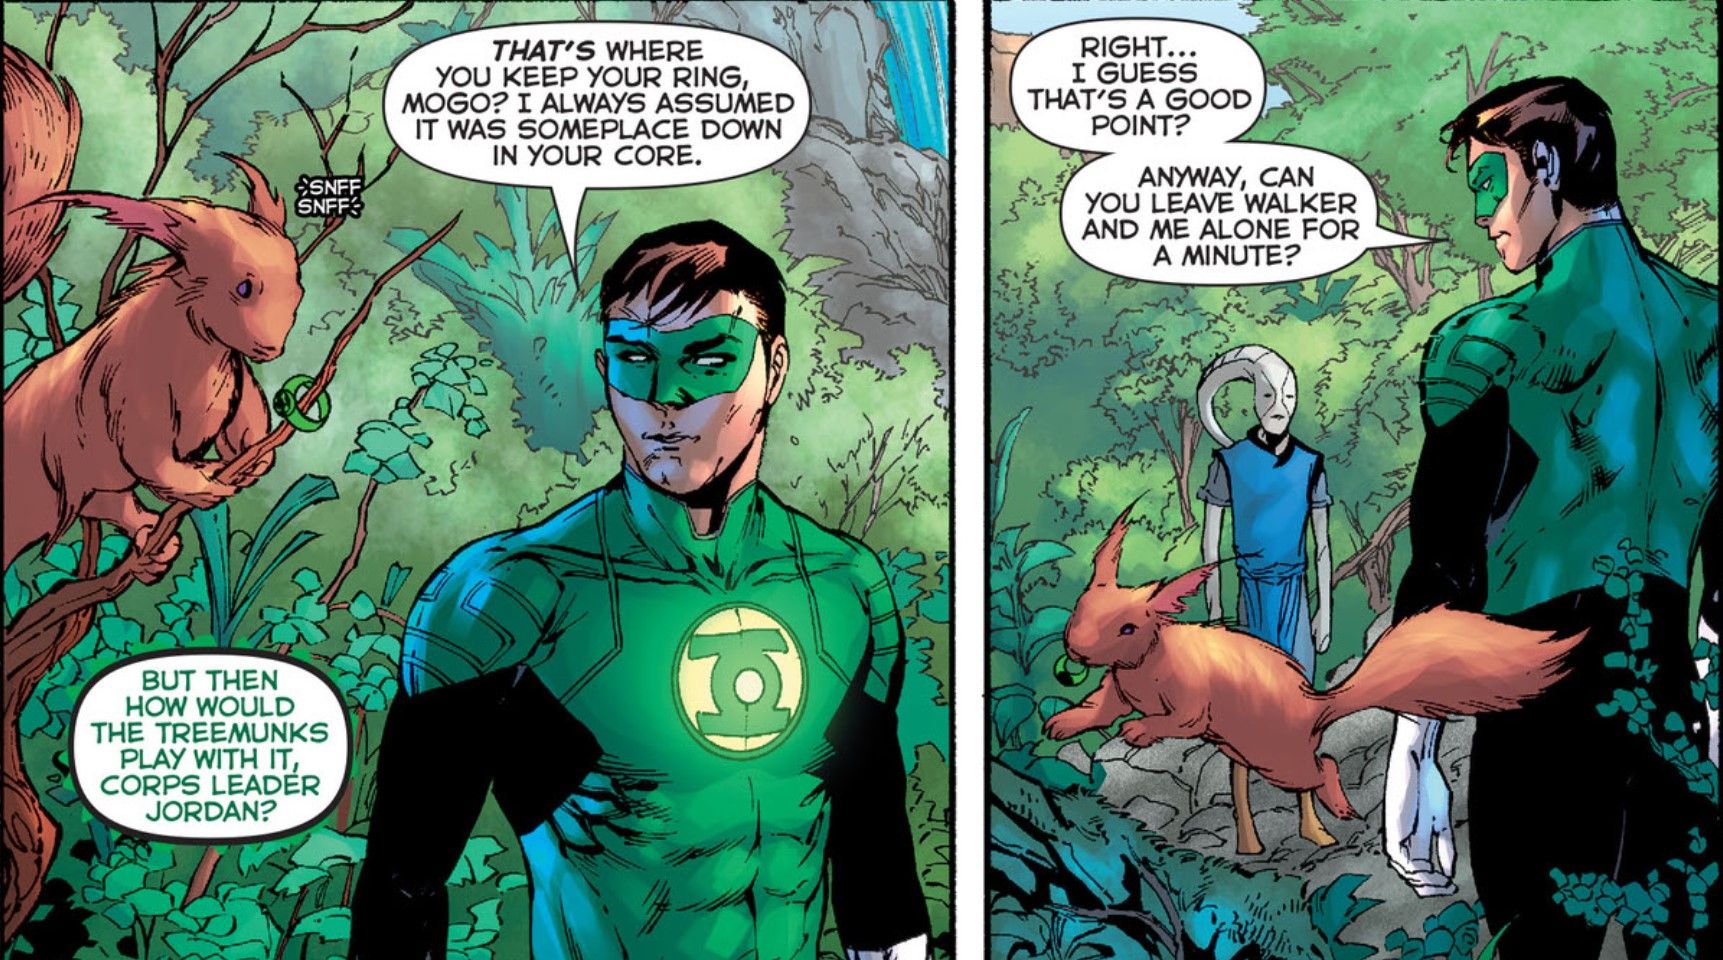 Mogo Green Lantern Power Ring Treemunks DC Comics